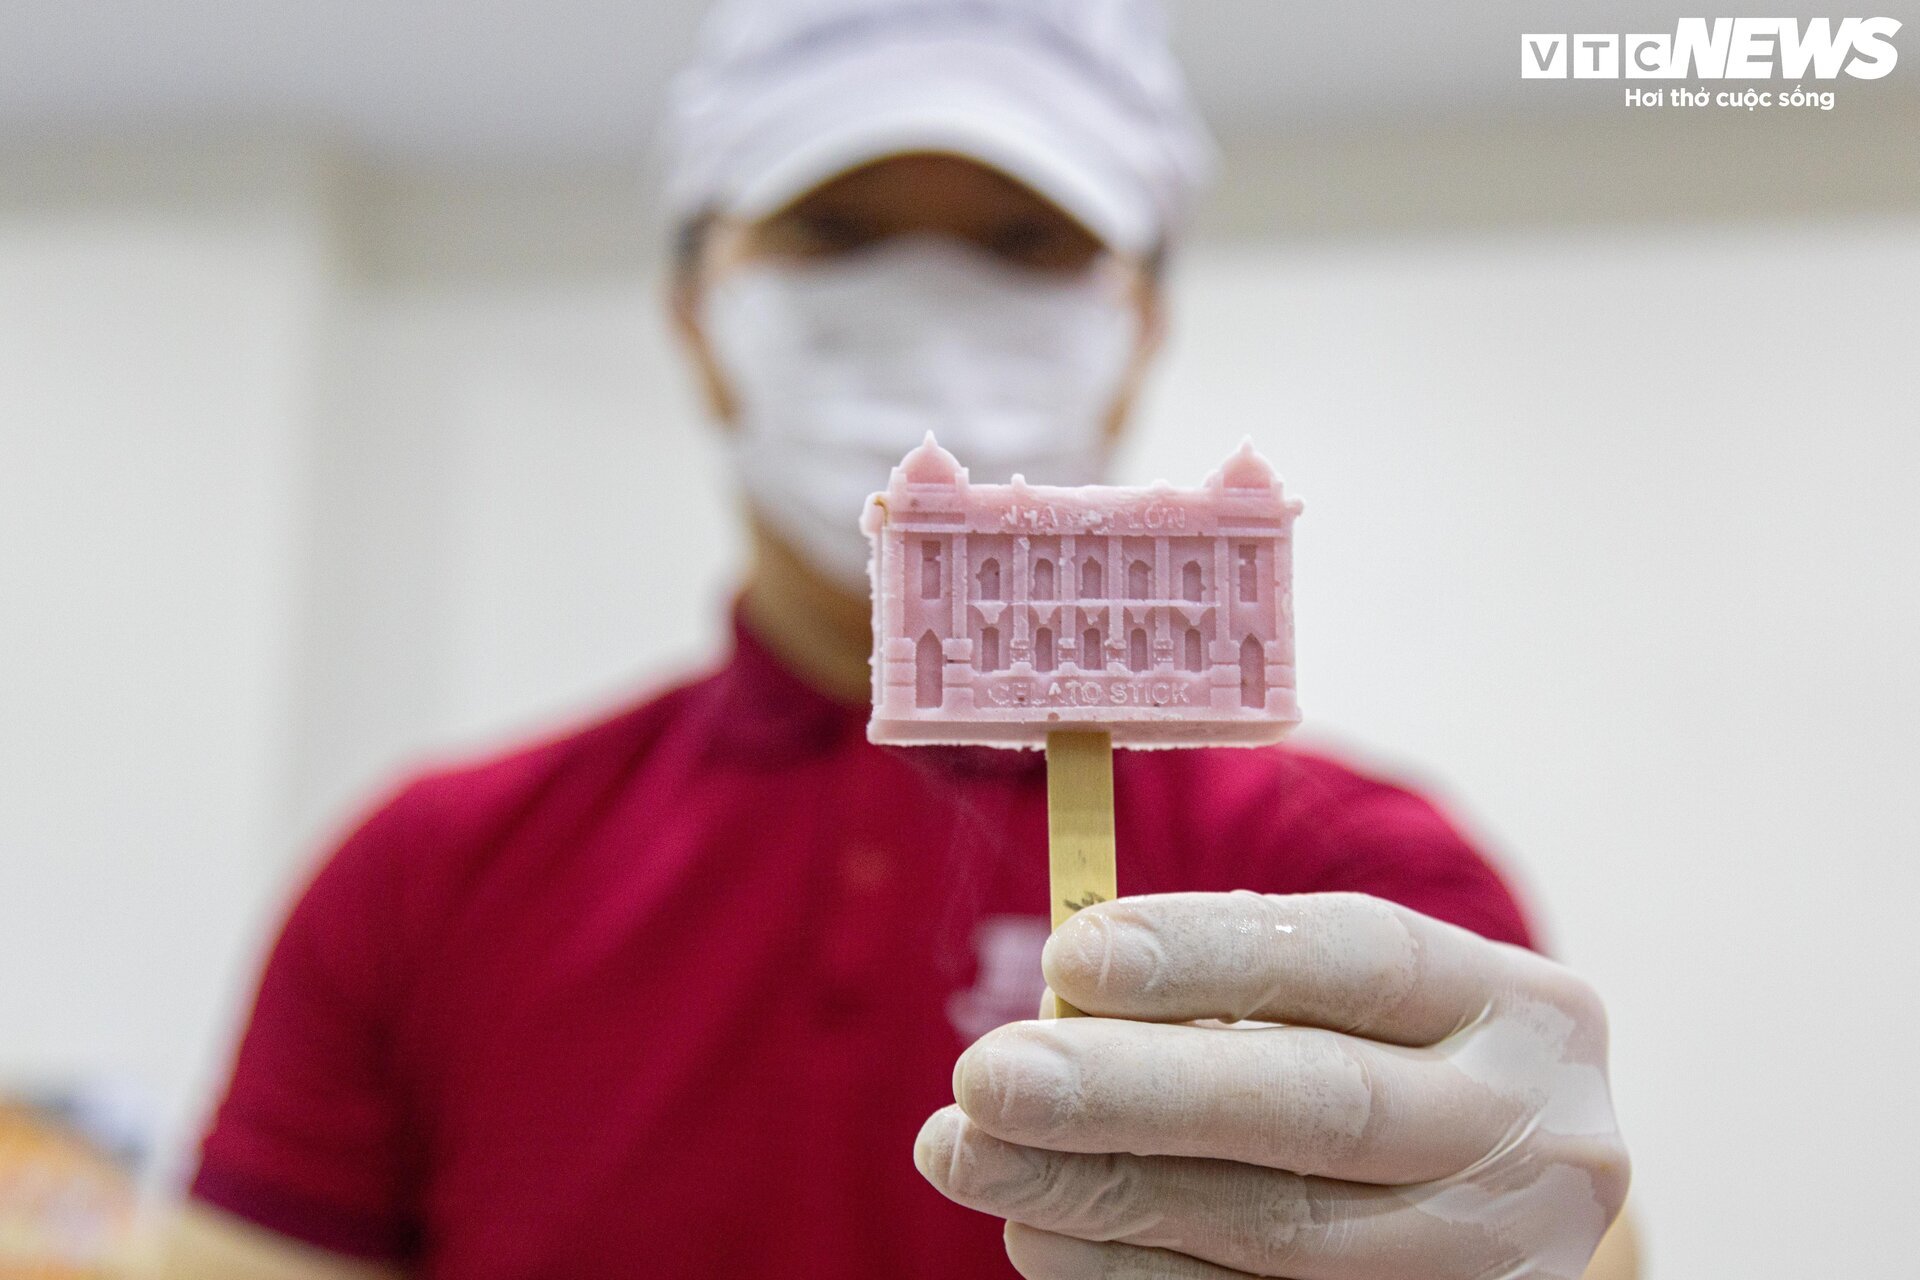 Cận cảnh quy trình làm kem 3D tạo hình 11 địa danh nổi tiếng ở Hà Nội - Ảnh 15.